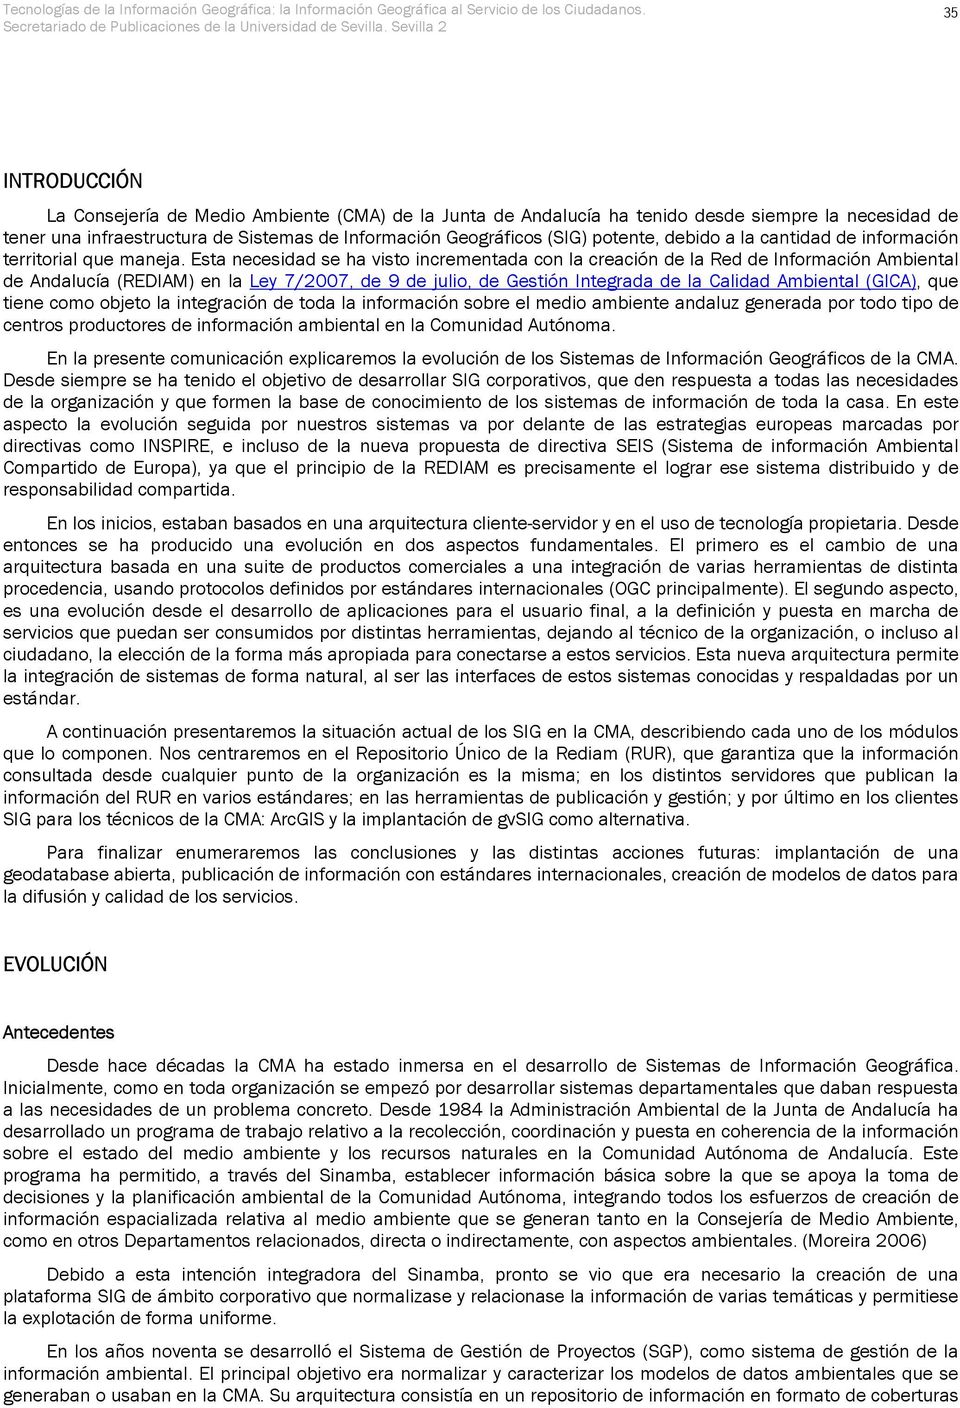 Esta necesidad se ha visto incrementada con la creación de la Red de Información Ambiental de Andalucía (REDIAM) en la Ley 7/2007, de 9 de julio, de Gestión Integrada de la Calidad Ambiental (GICA),